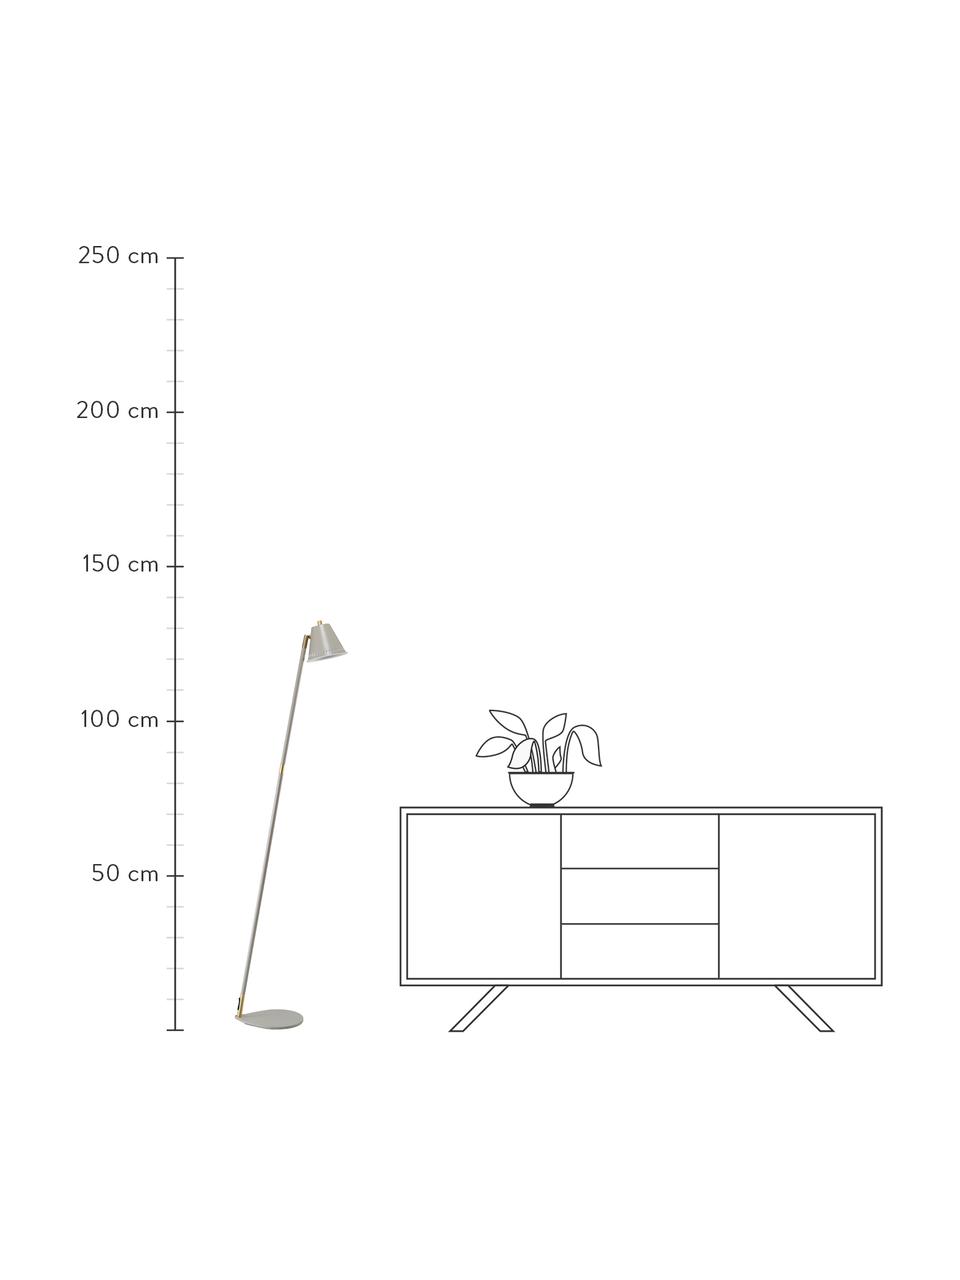 Lámpara de lectura pequeña Pine, estilo retro, Pantalla: metal recubierto, Adornos: metal recubierto, Cable: plástico, Latón, An 37 x Al 133 cm